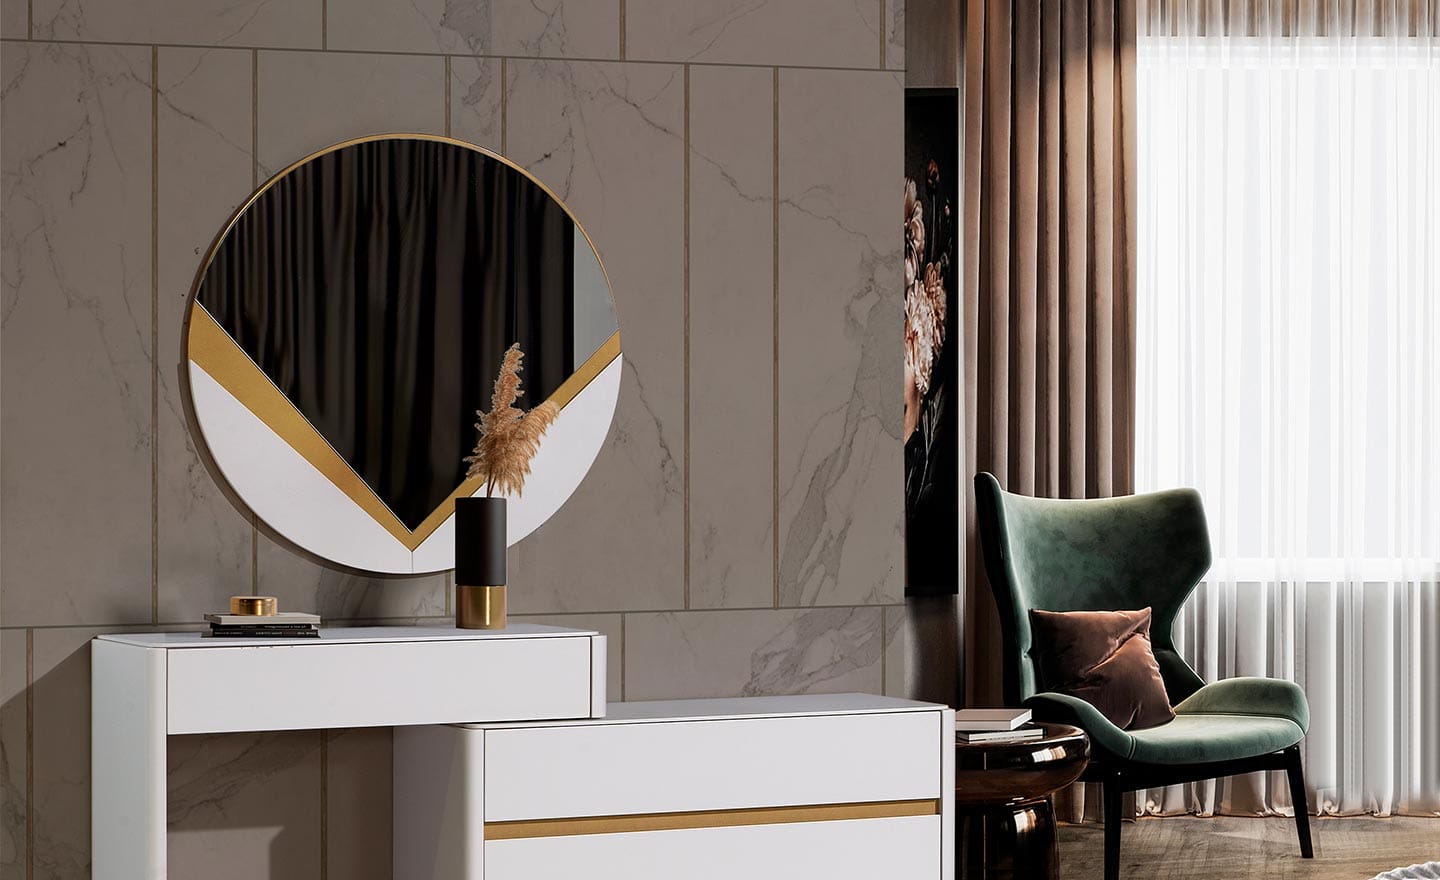 Espelho Avanti - Espelho Redondo, Moderno e Elegante em MDF com Detalhes Lacados